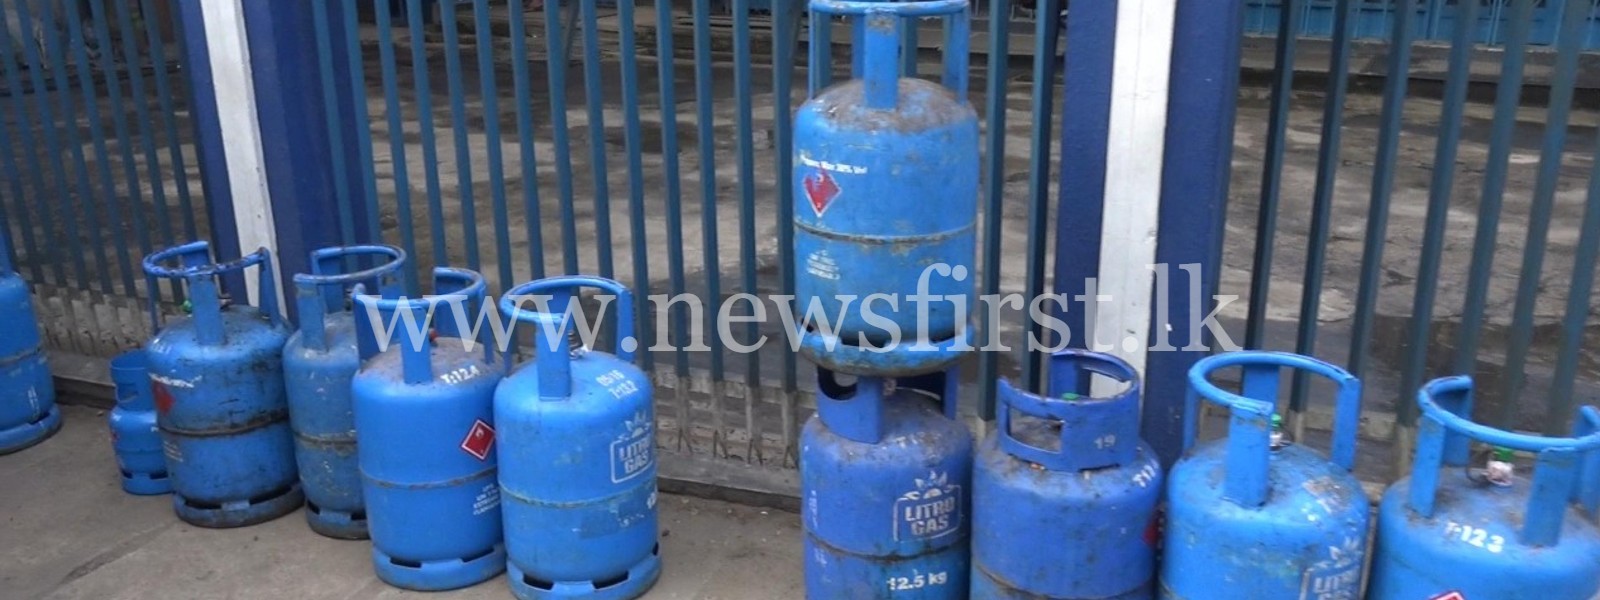 Gas shortage in Sri Lanka still unresolved